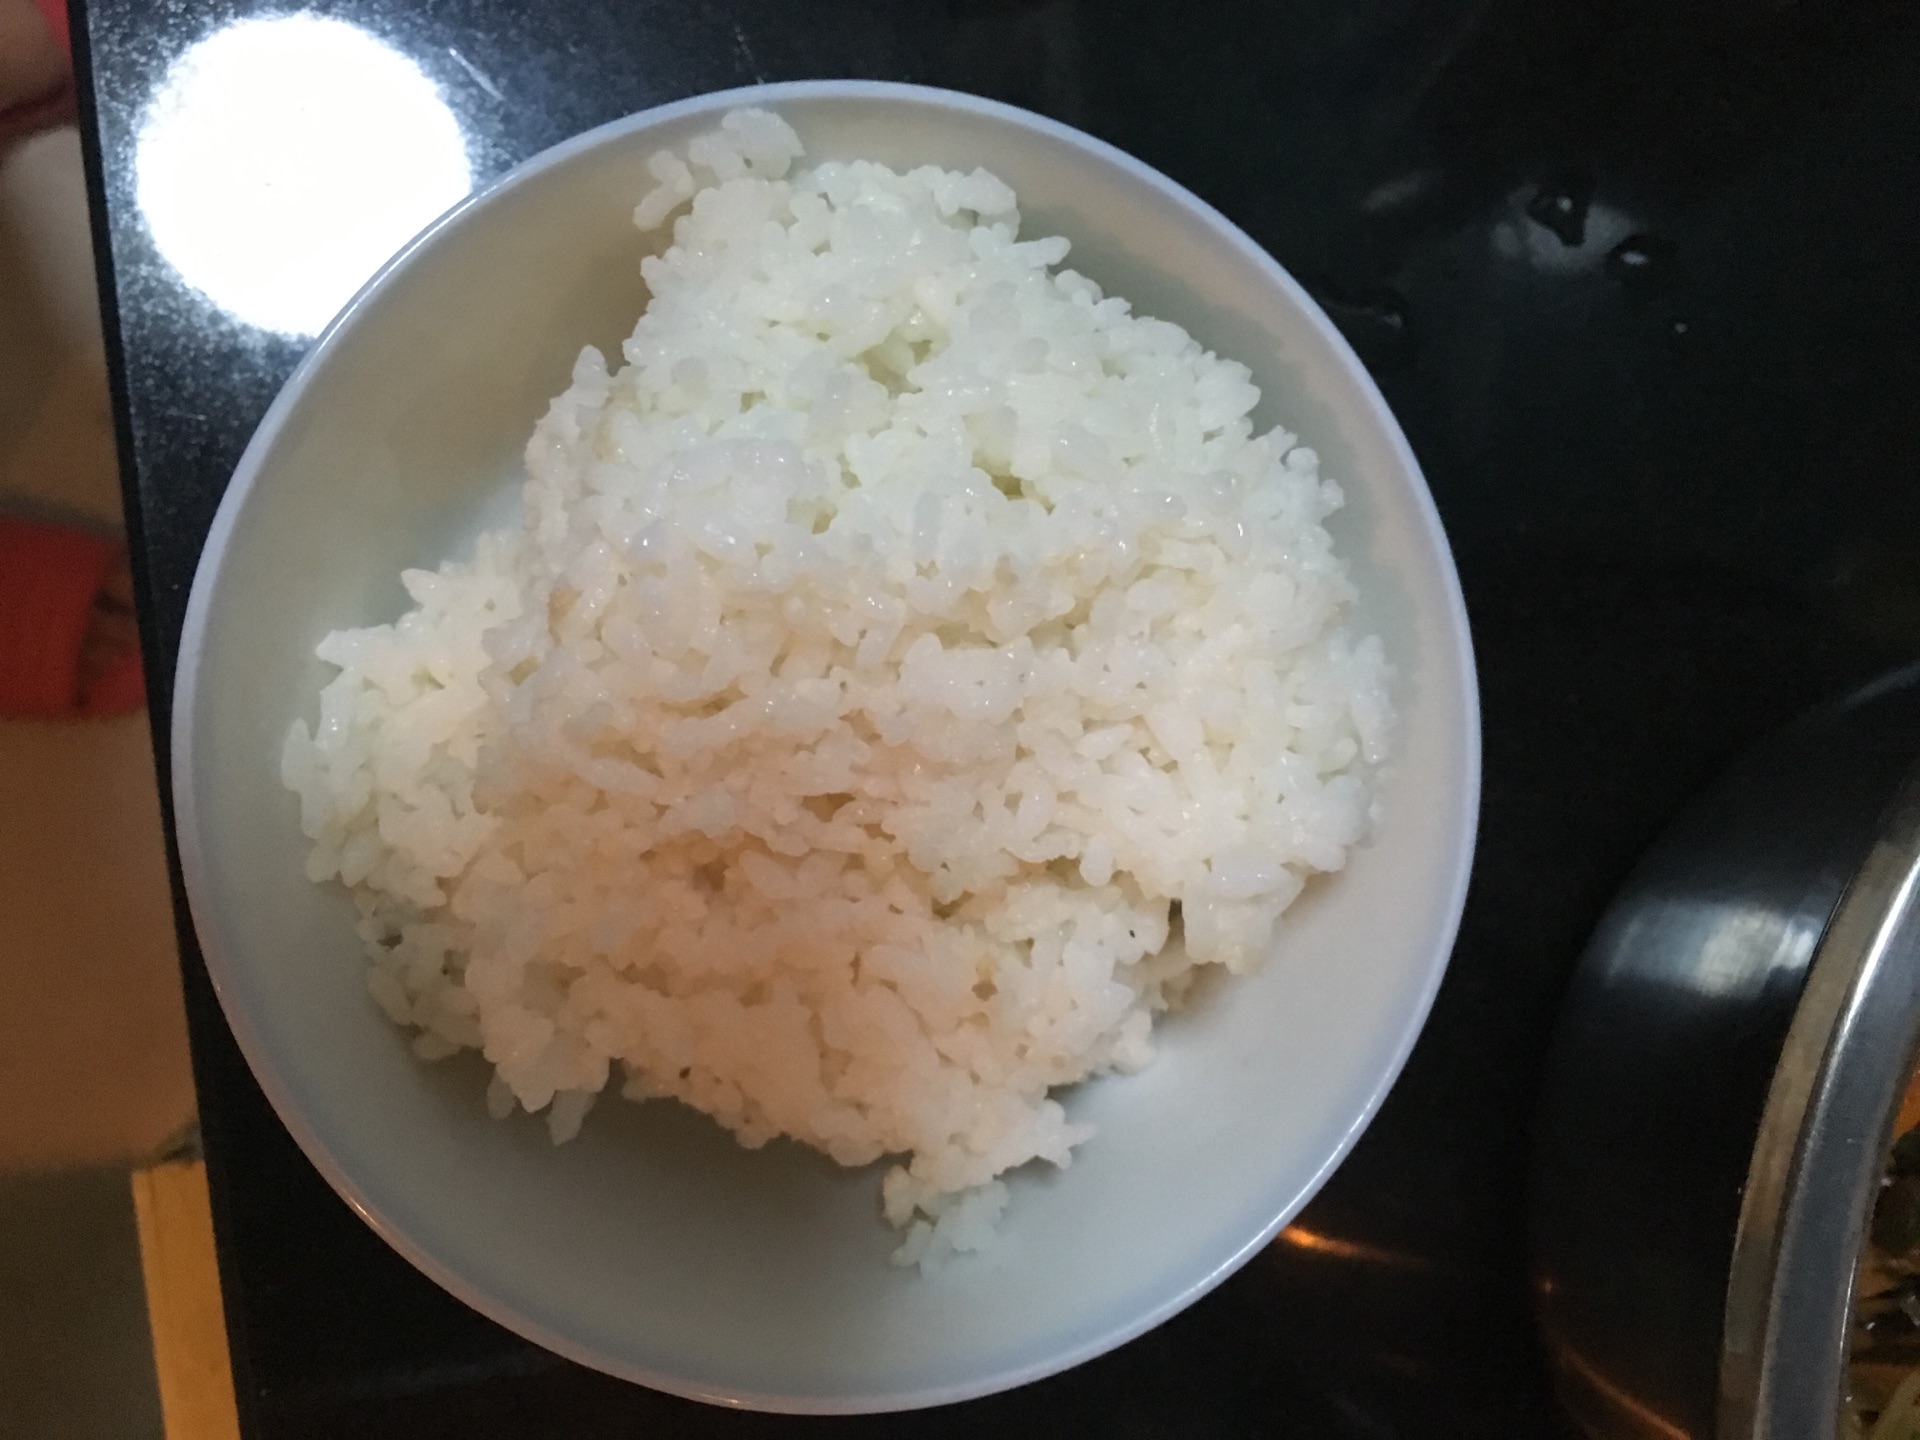 【早安】告诉你时下流行的糙米发芽饭怎么做才好吃-搜狐吃喝